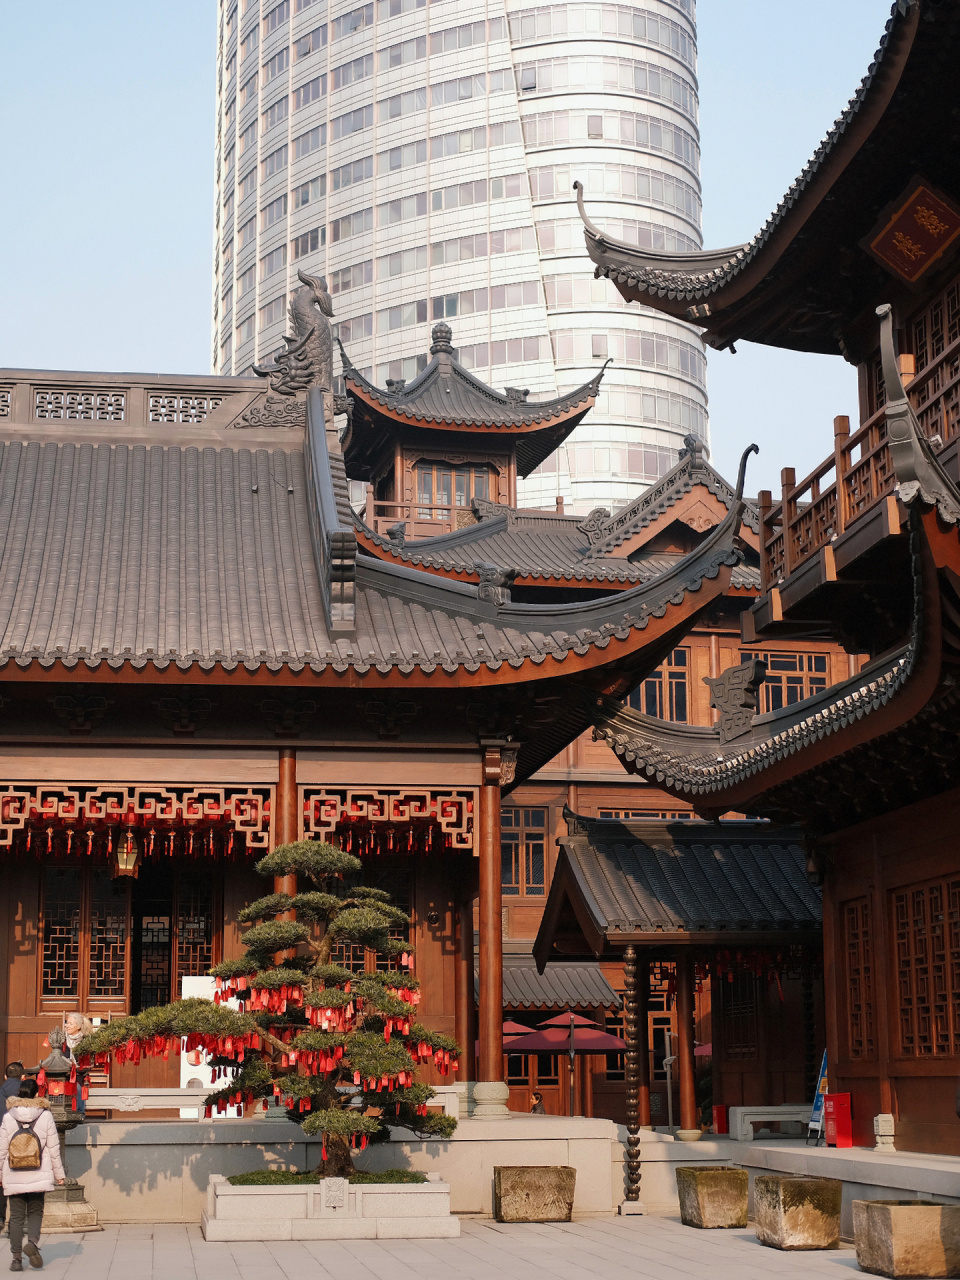 上海玉佛寺天王殿图片